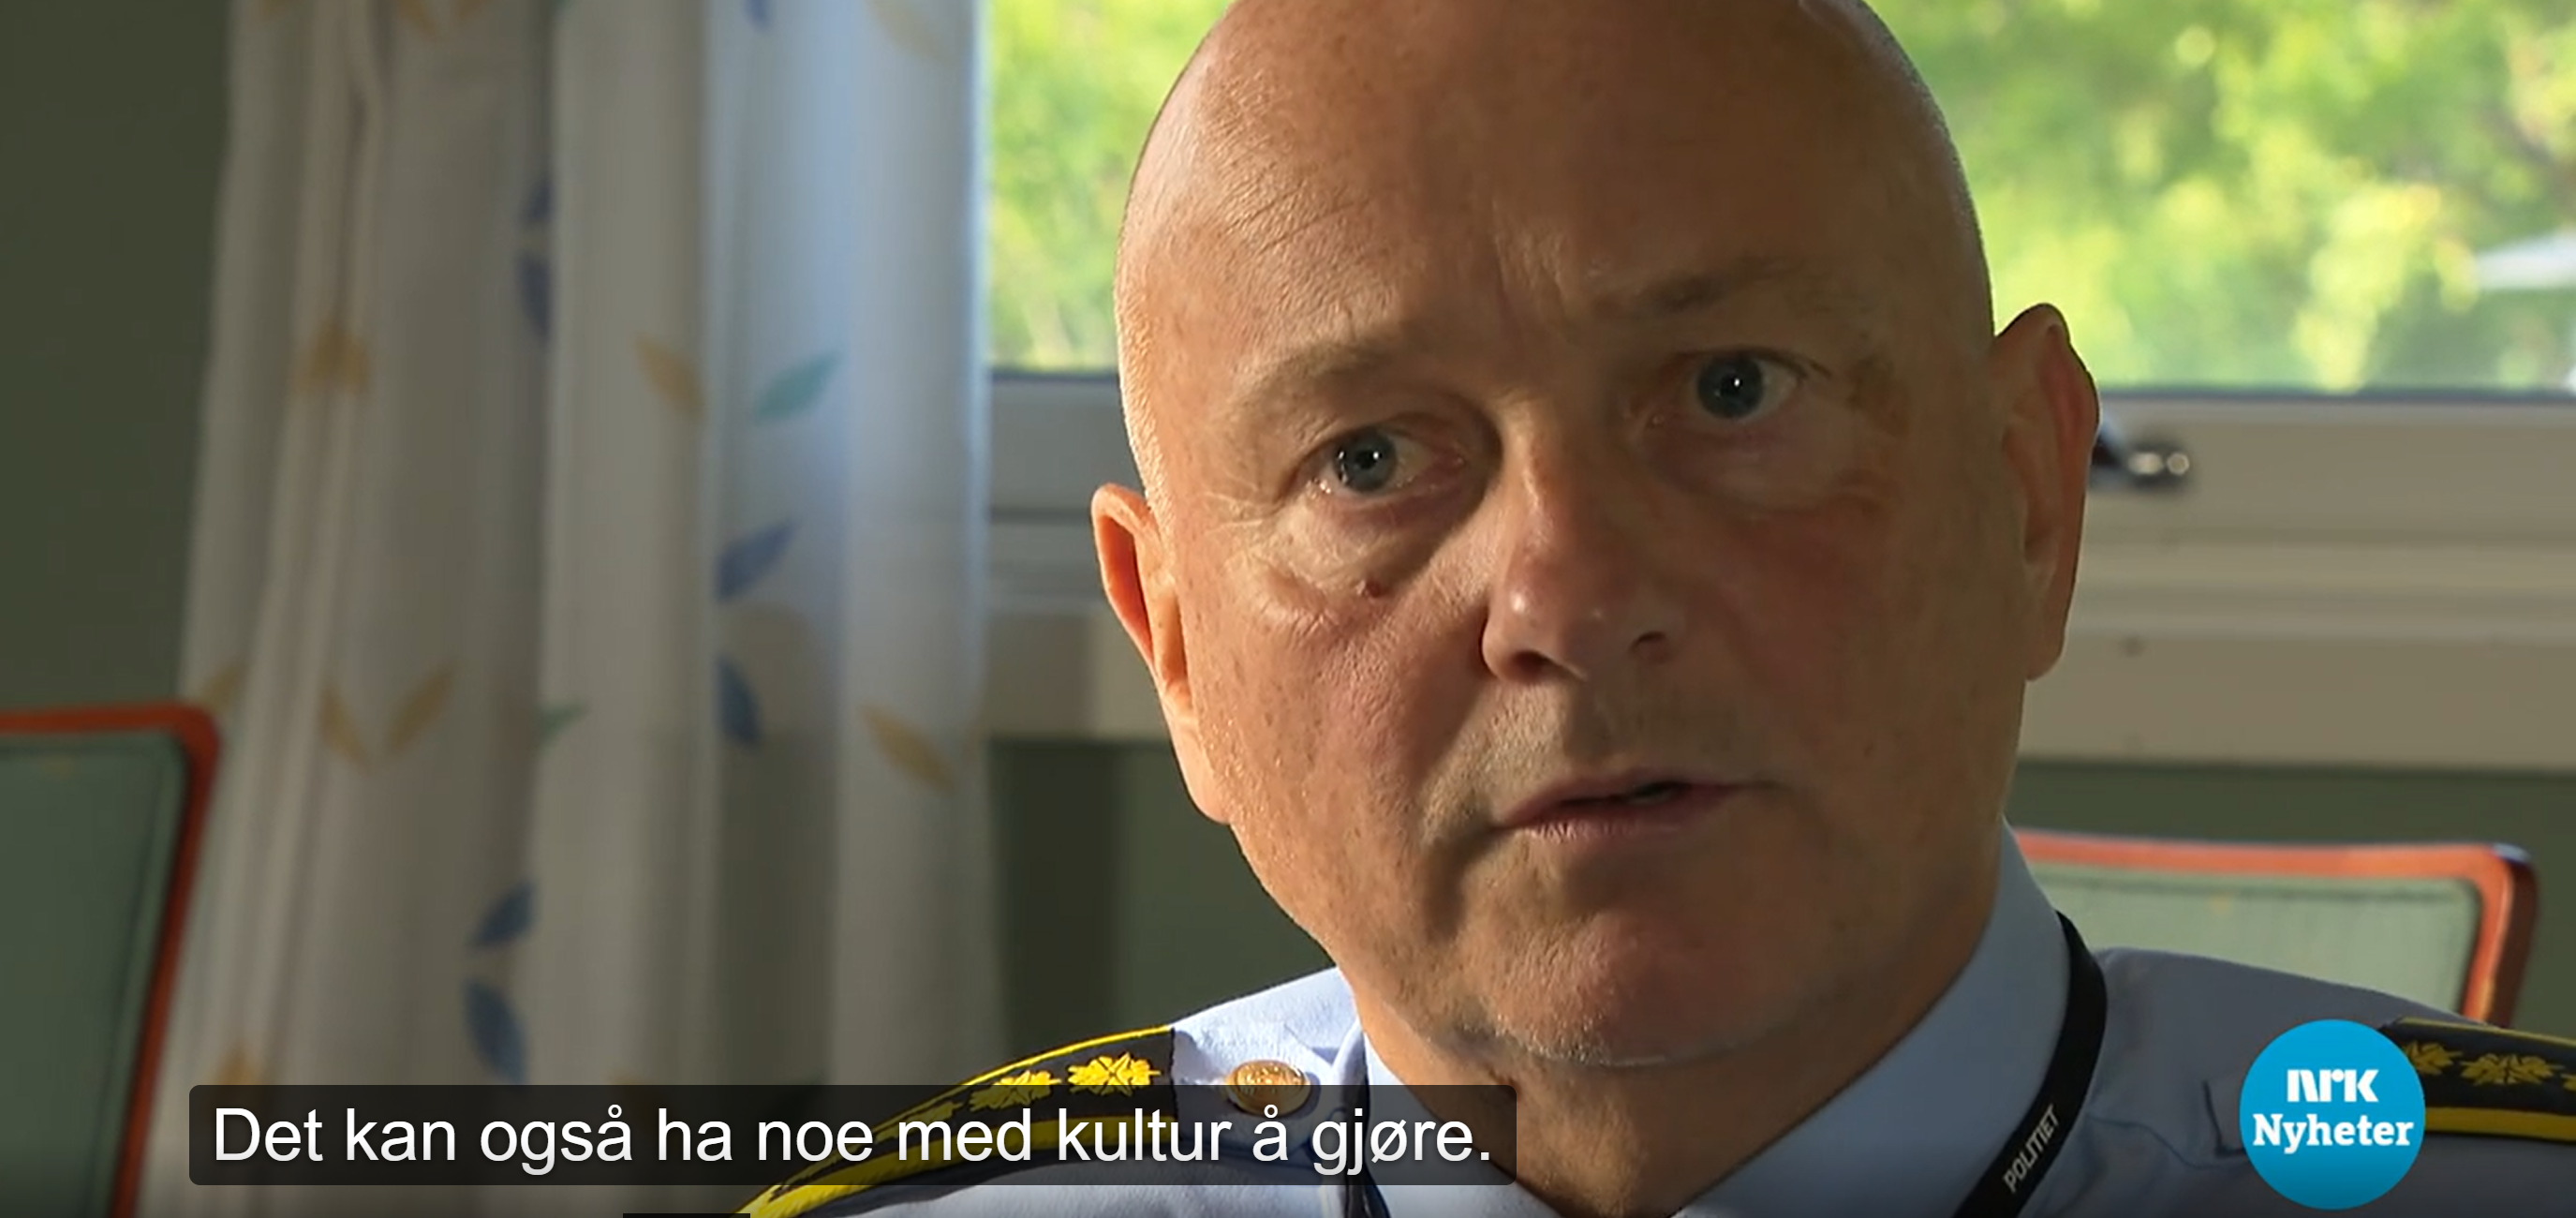 NRK lærte ingenting av romkvinne-saken, fortsetter å føre seerne bak lyset  – Document